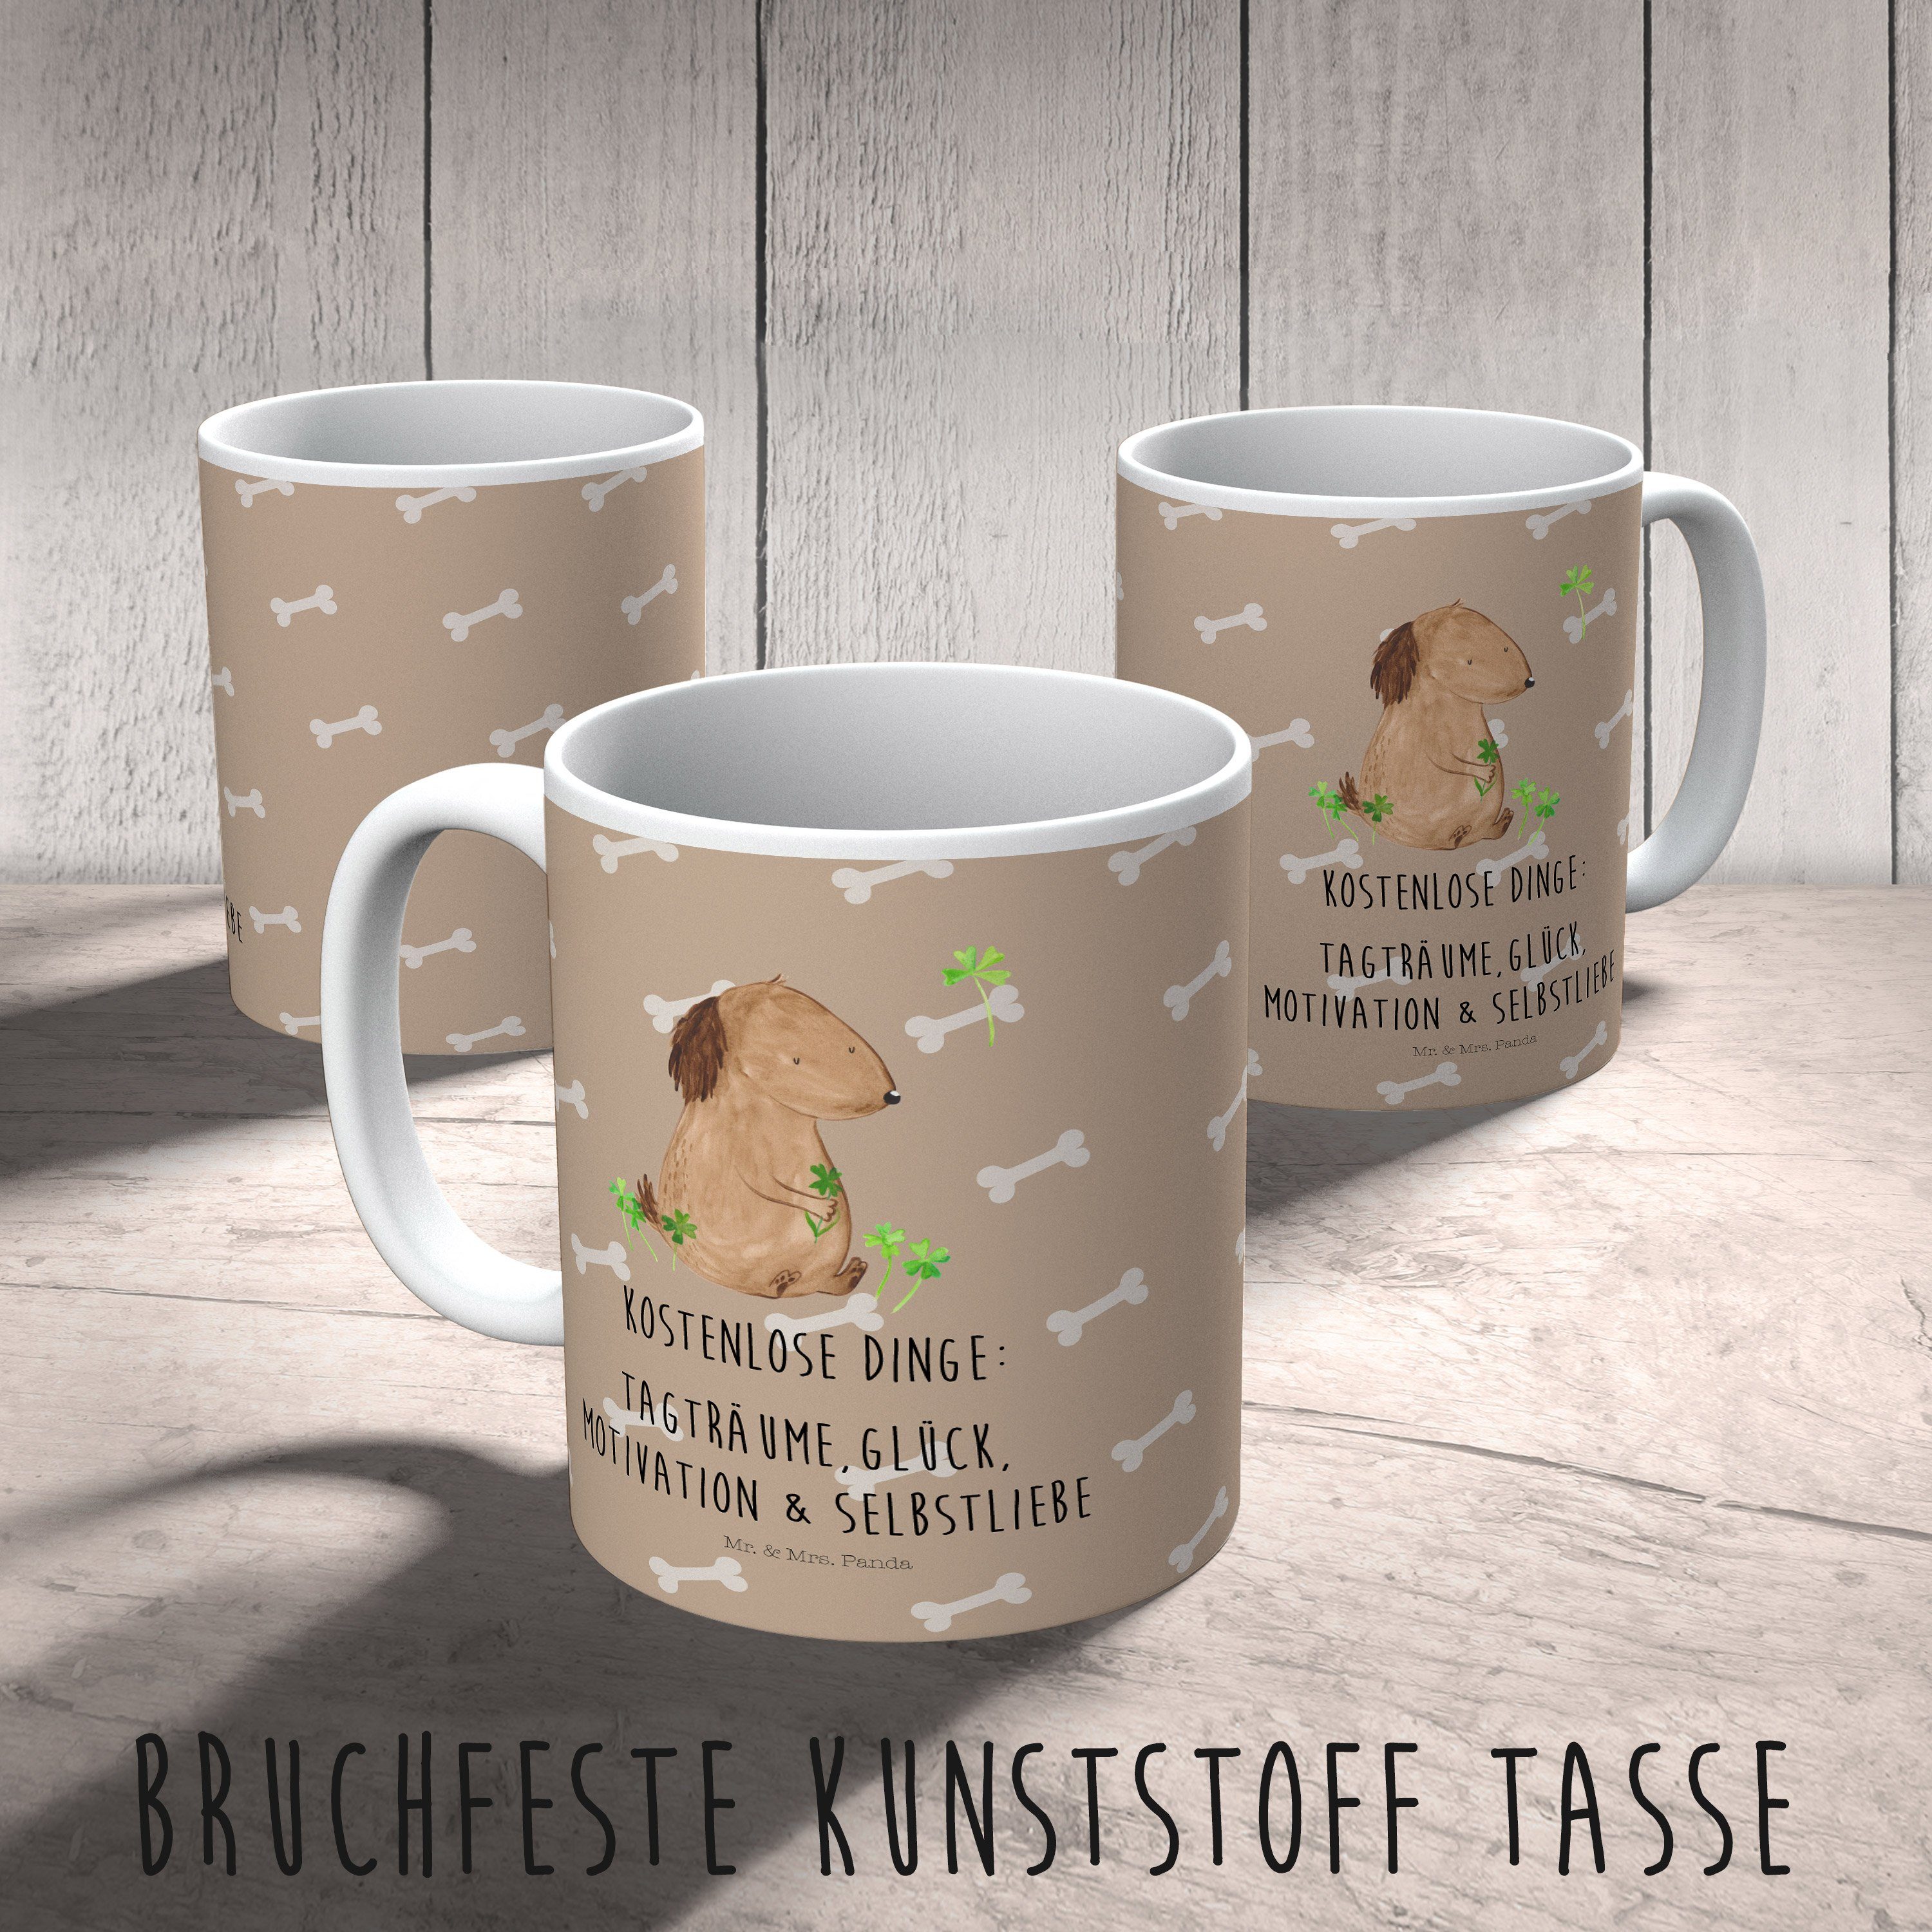 Kunststoff Kleeblatt Hund - Mrs. Mr. Sprüche, & Kinderbecher Geschenk, Outdoorgeschi, Tasse, Hundeglück - Panda